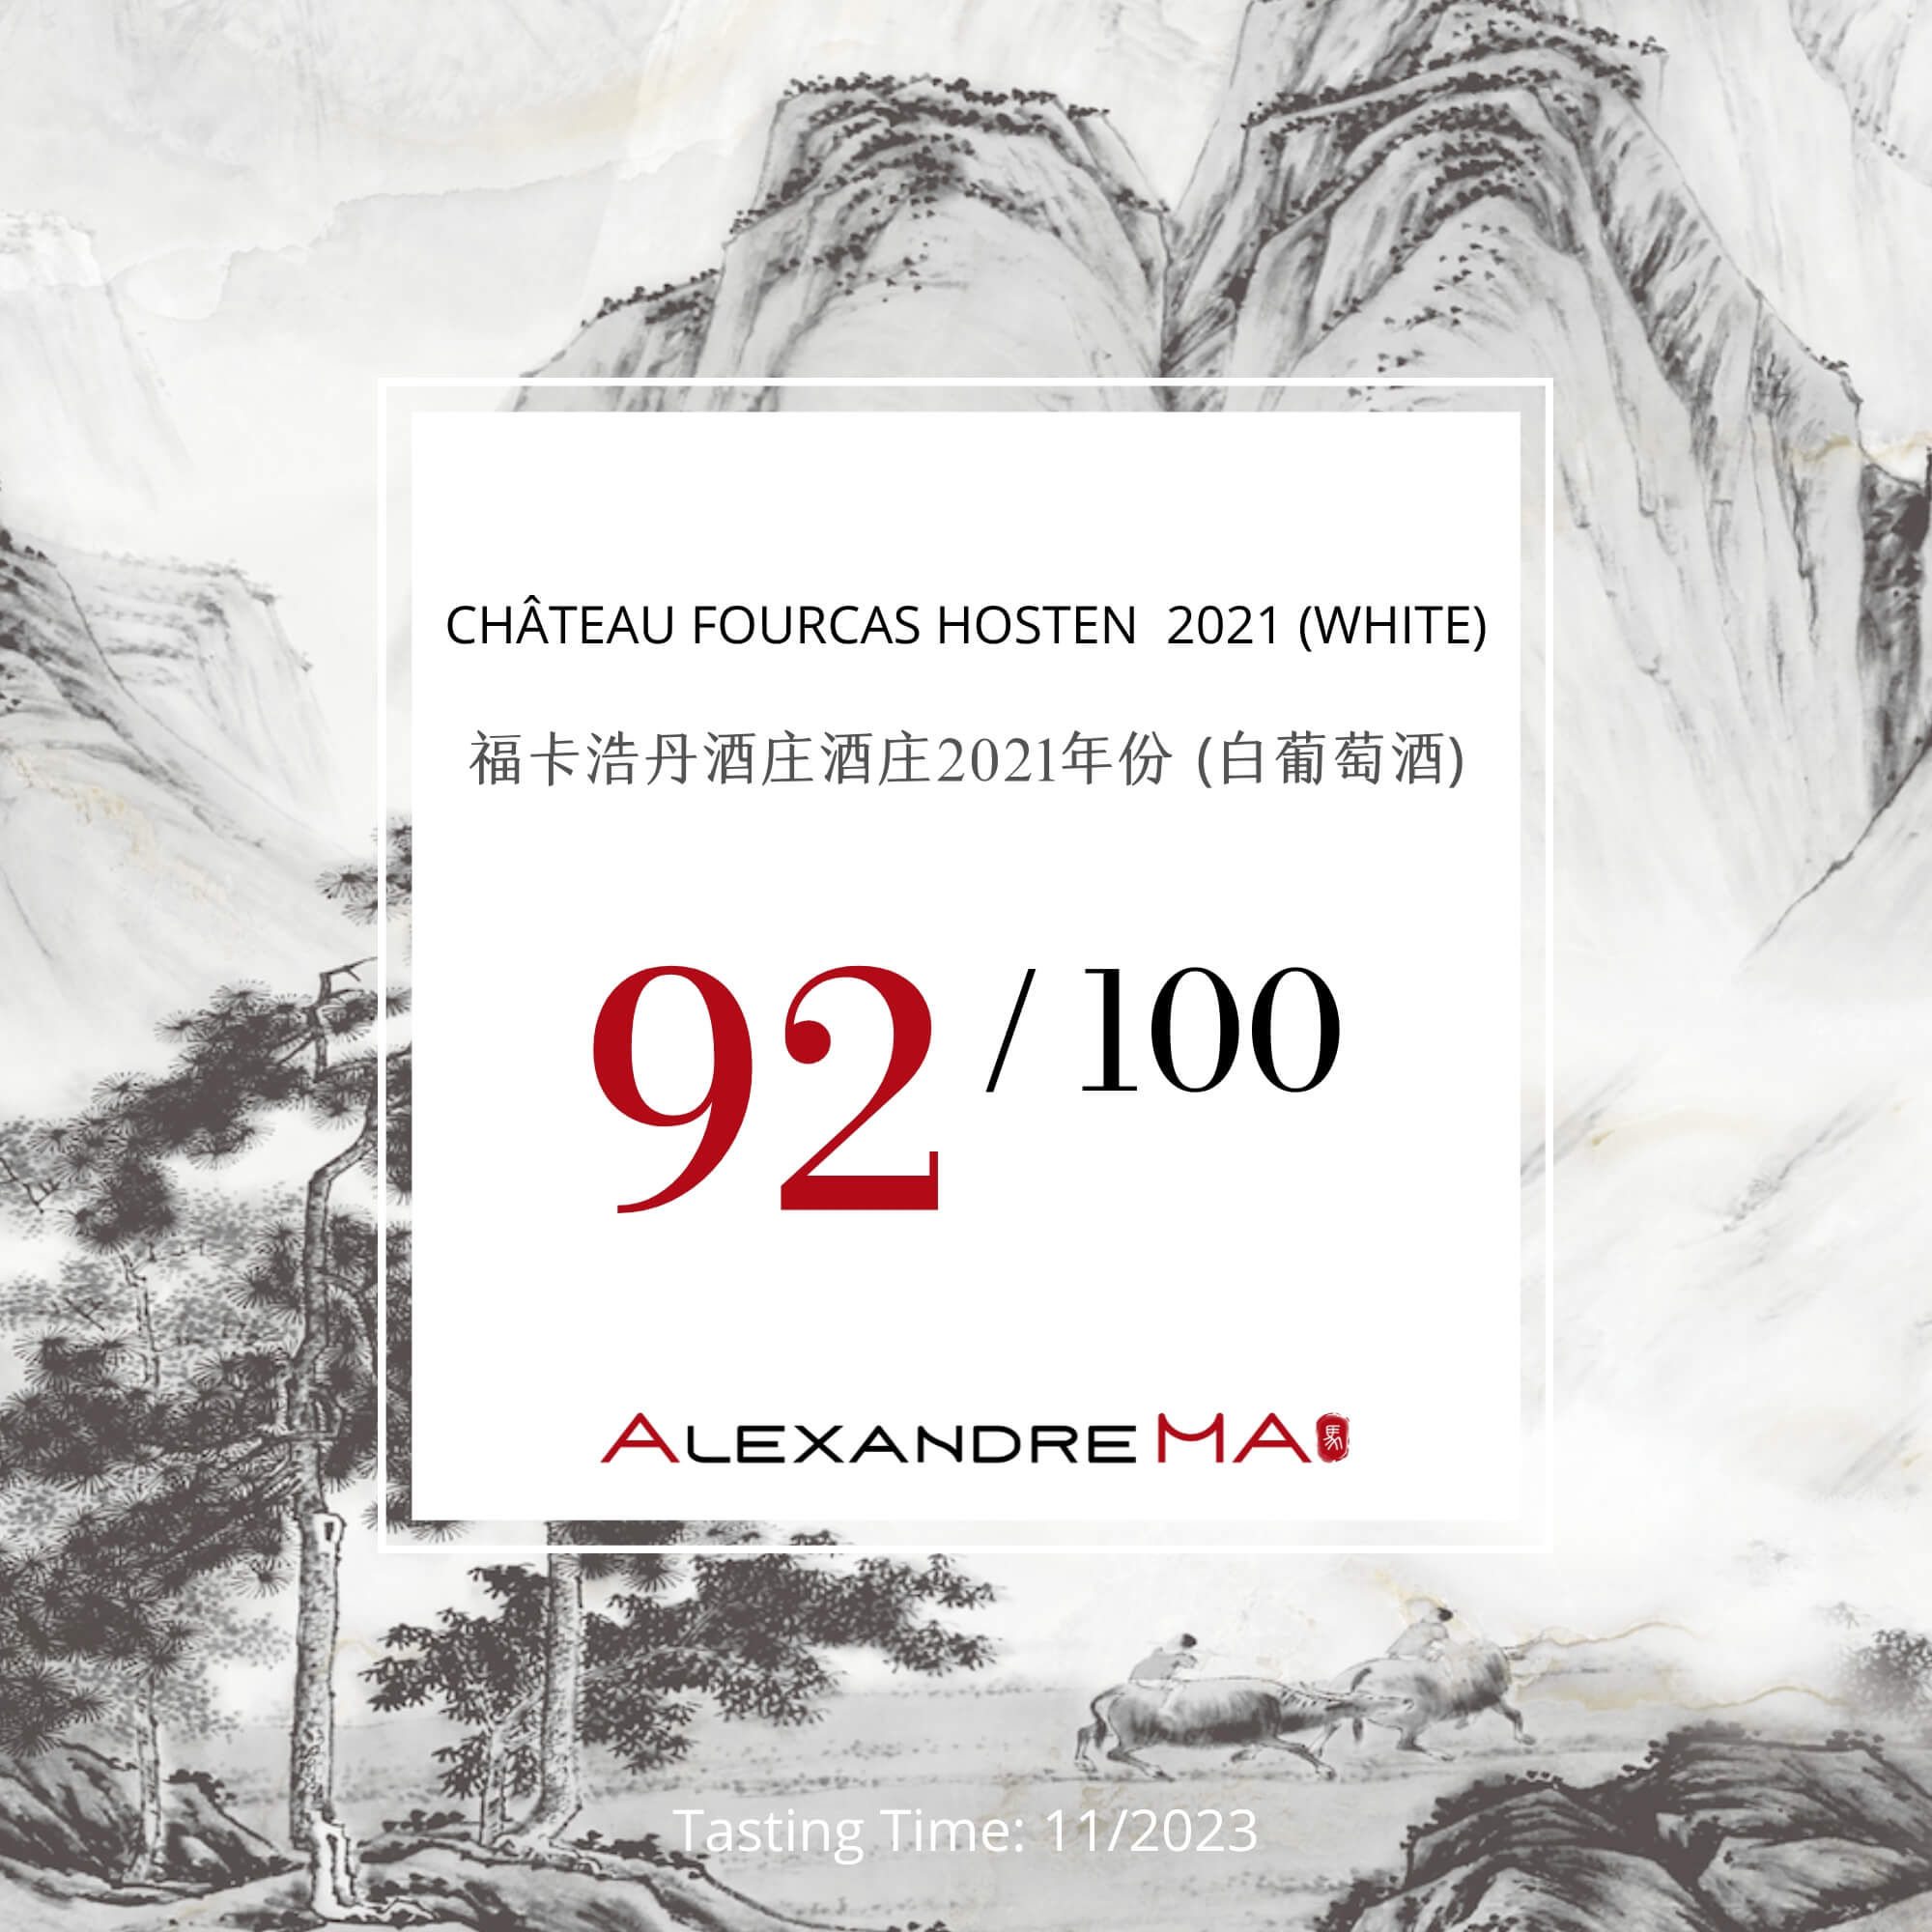 Château Fourcas Hosten 2021-White 福卡浩丹酒庄 - Alexandre Ma